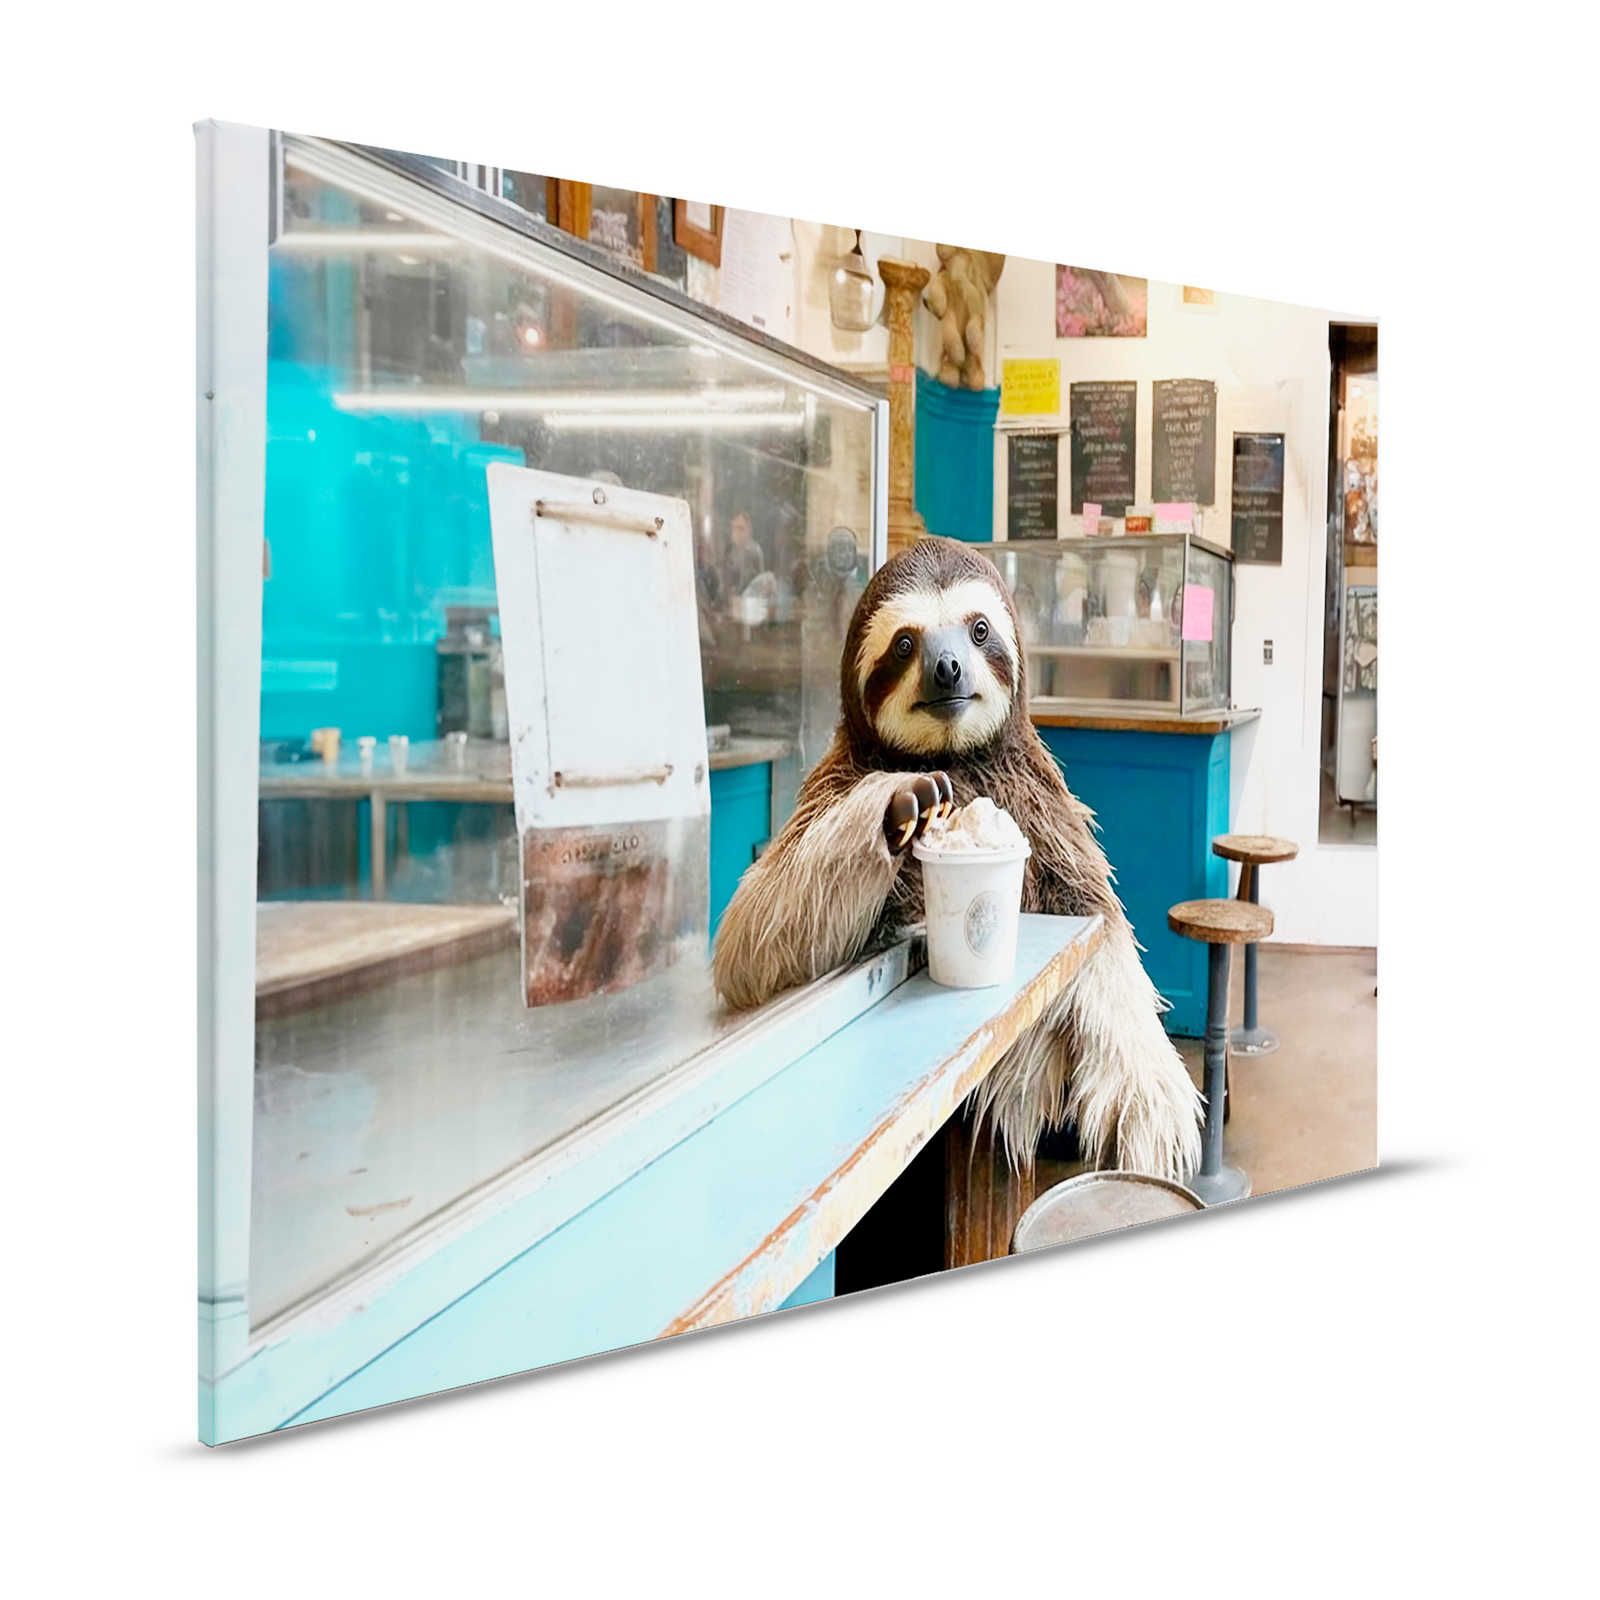 Toile KI »icy sloth« - 120 cm x 80 cm
